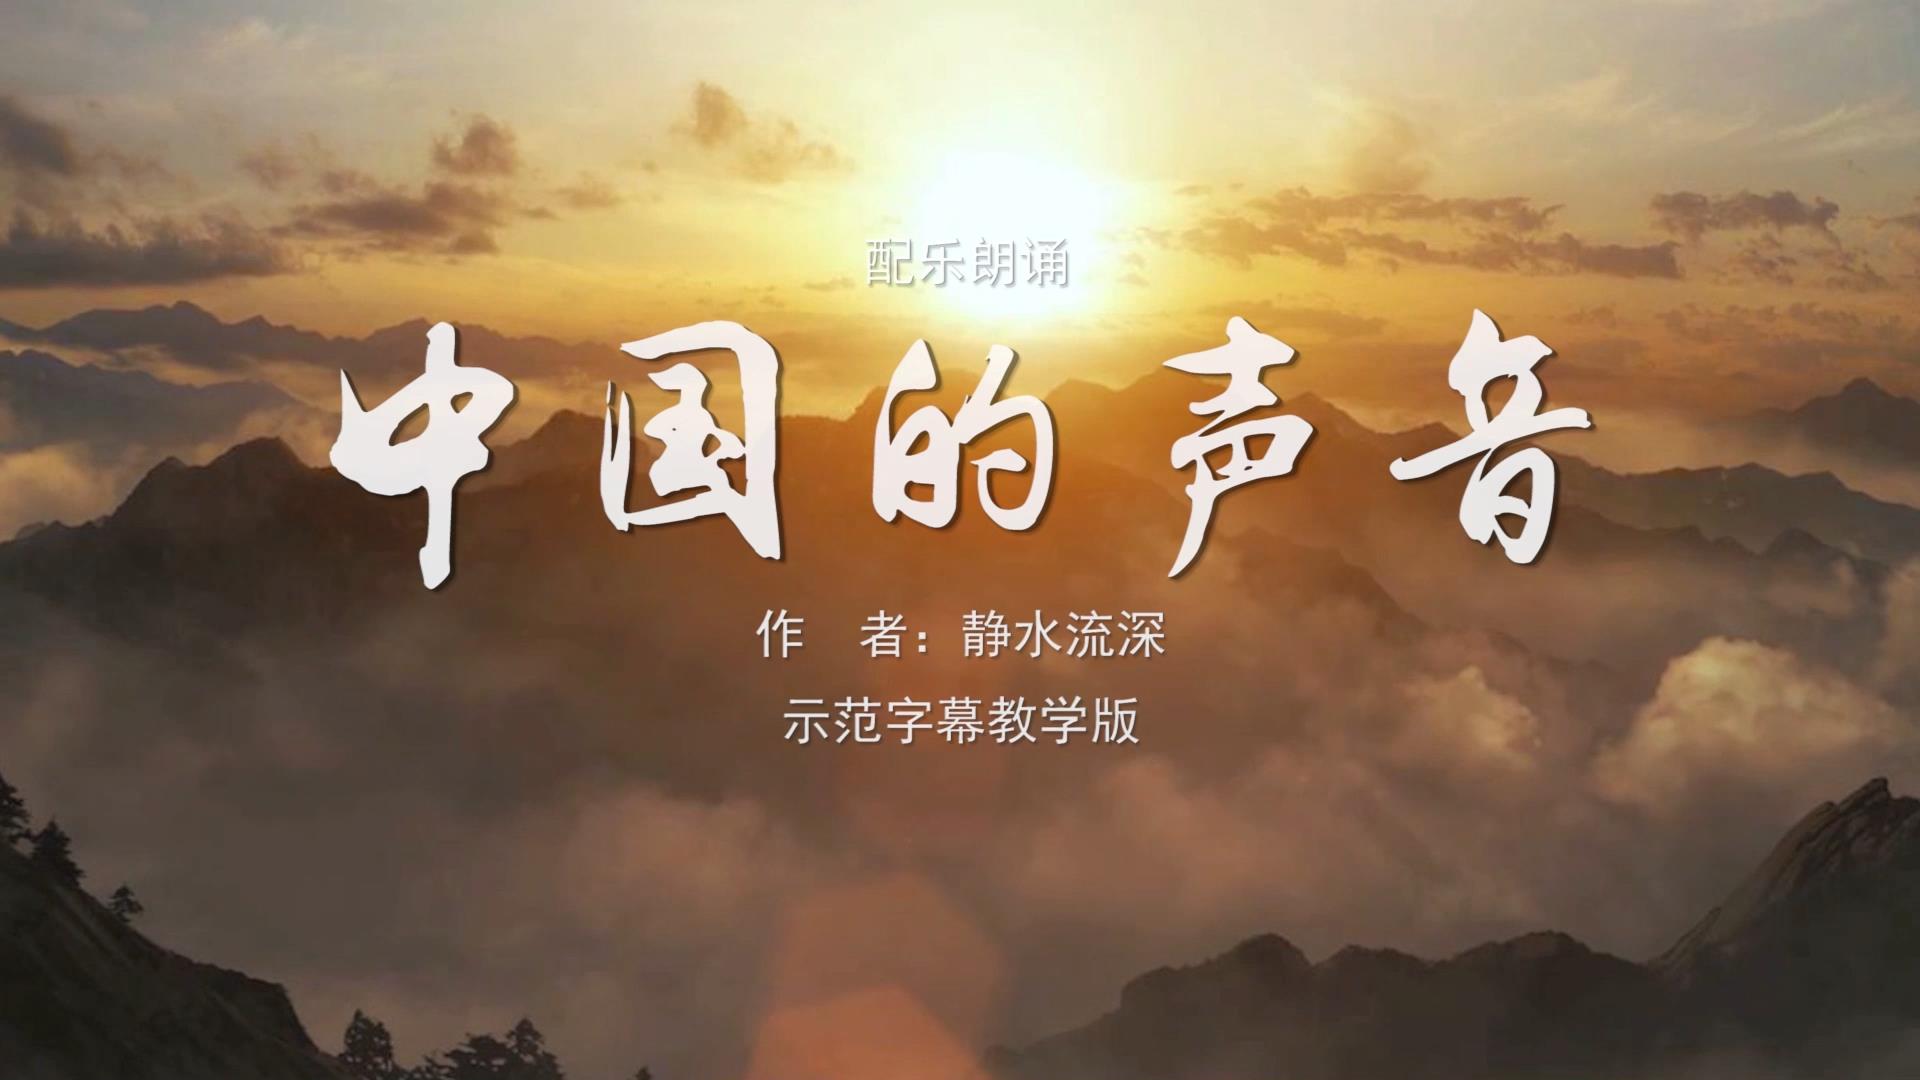 中国的声音 诗歌朗诵配乐伴奏舞台演出LED背景大屏幕视频素材TV